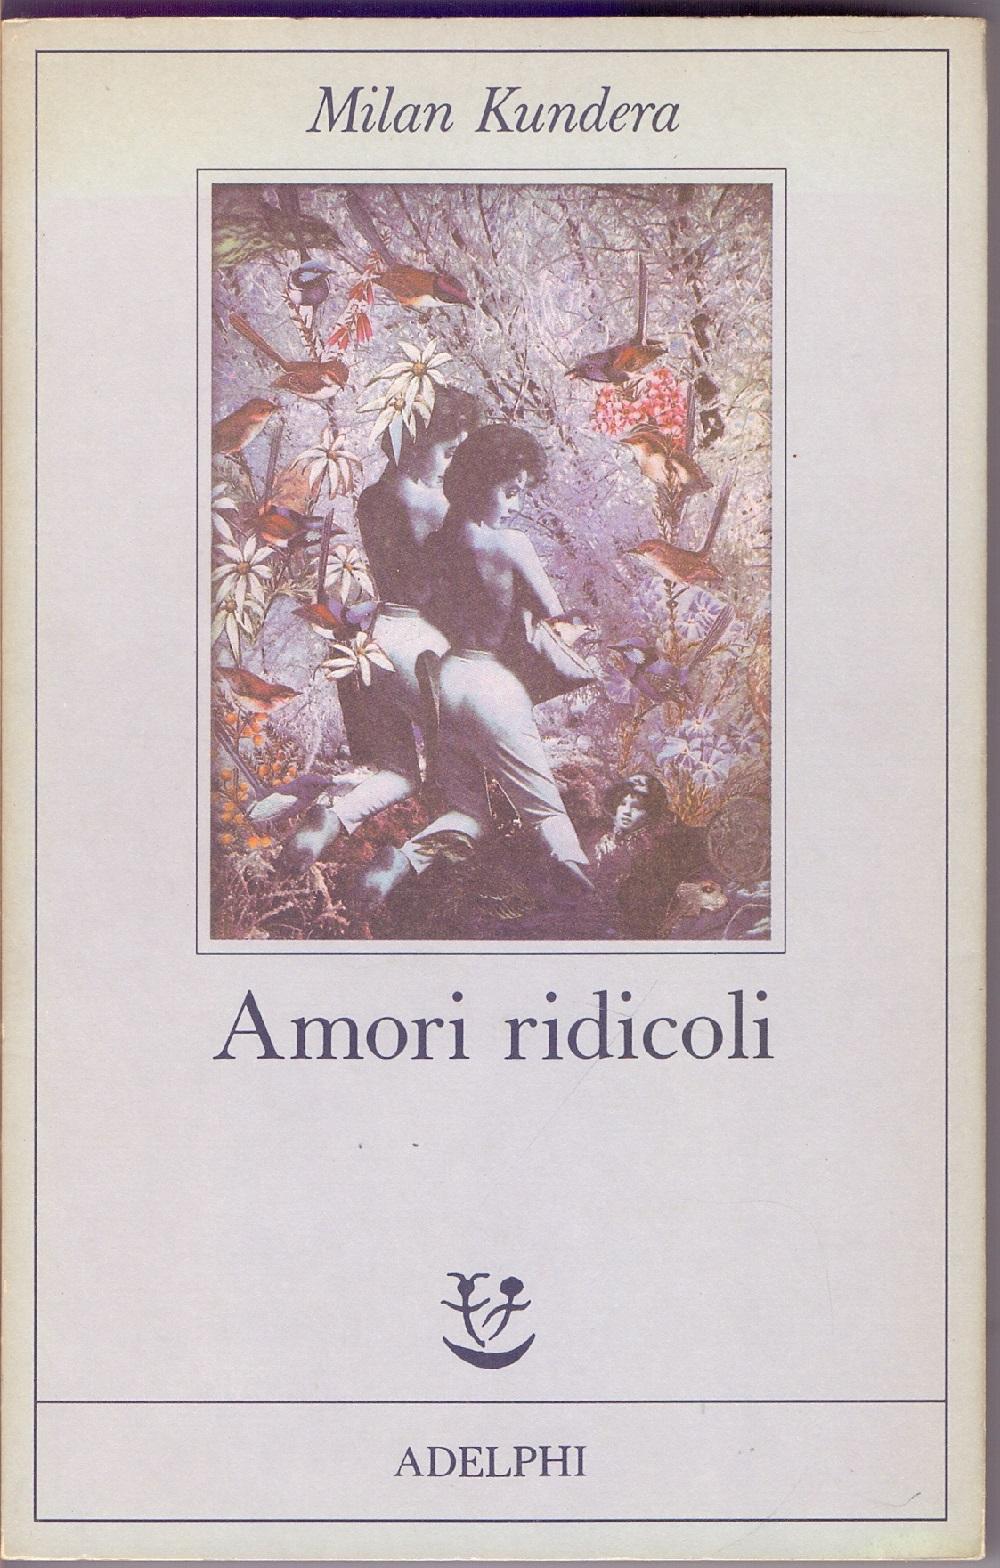 Amori ridicoli - Milan Kundera - Milan Kundera